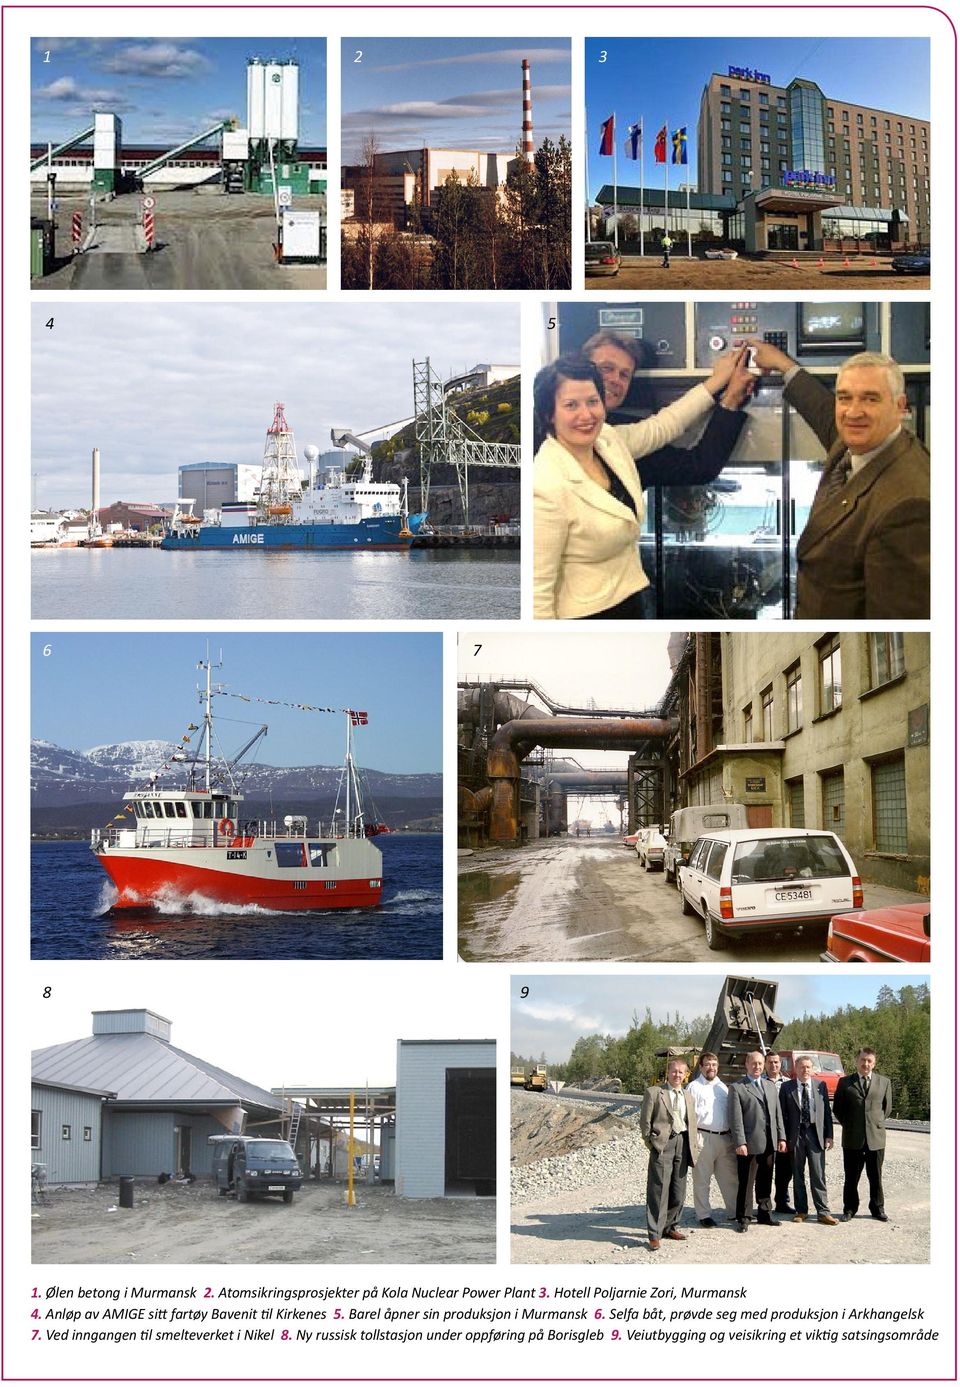 Barel åpner sin produksjon i Murmansk 6. Selfa båt, prøvde seg med produksjon i Arkhangelsk 7.